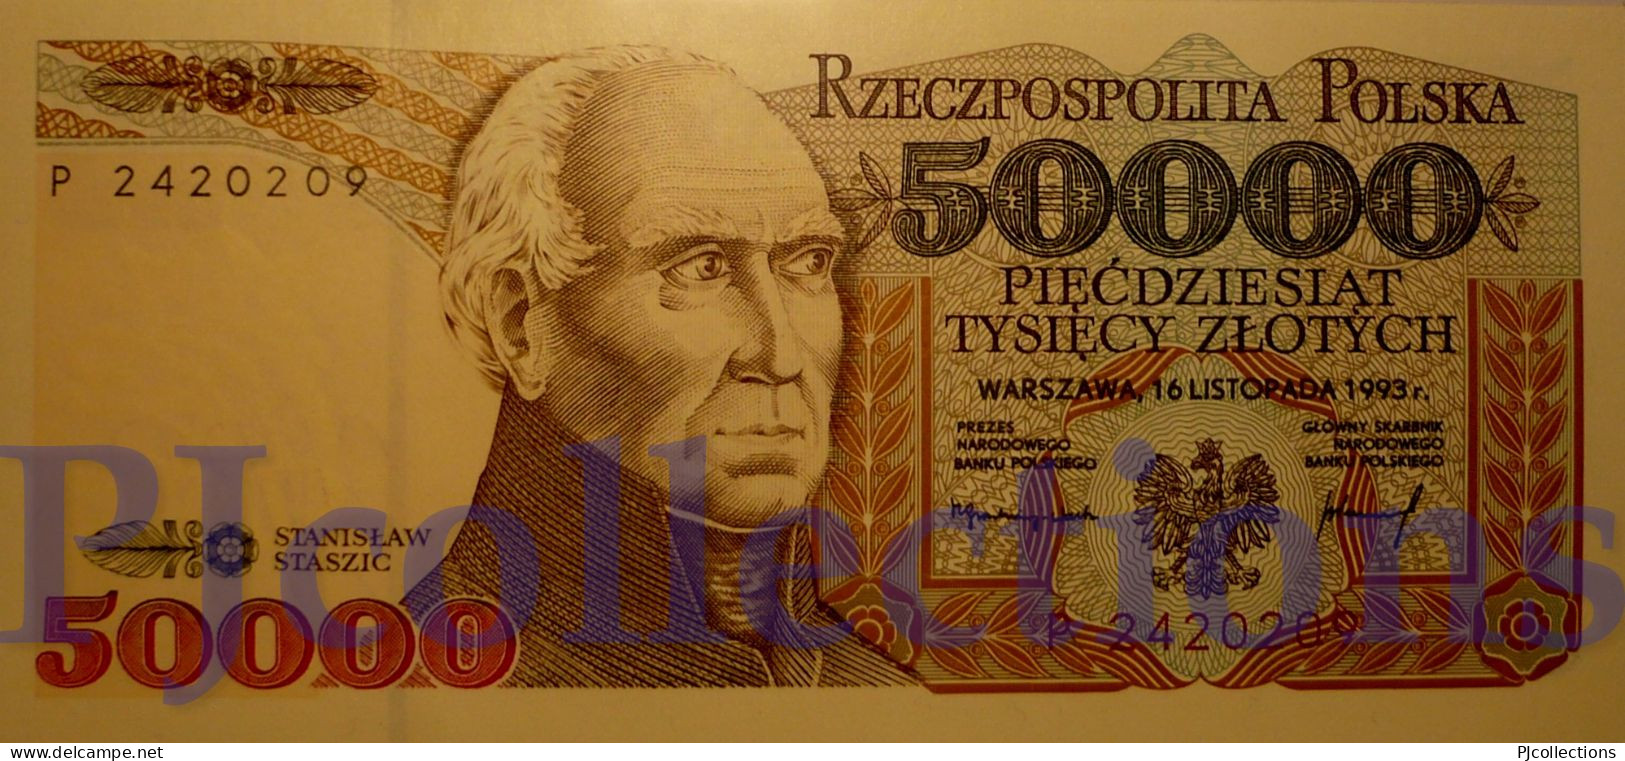 POLONIA - POLAND 50000 ZLOTYCH 1993 PICK 159a UNC - Pologne